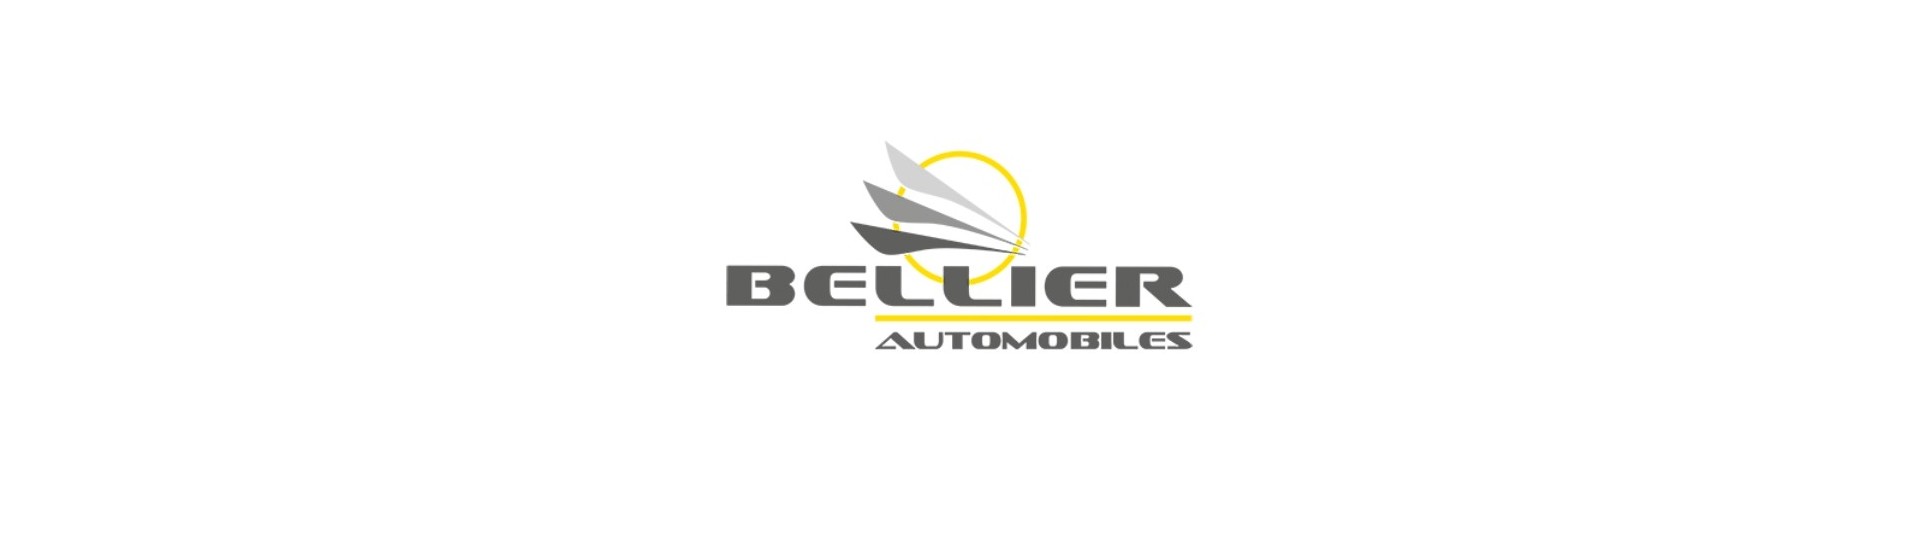 Värmeblock till bästa pris för bil utan tillstånd Bellier